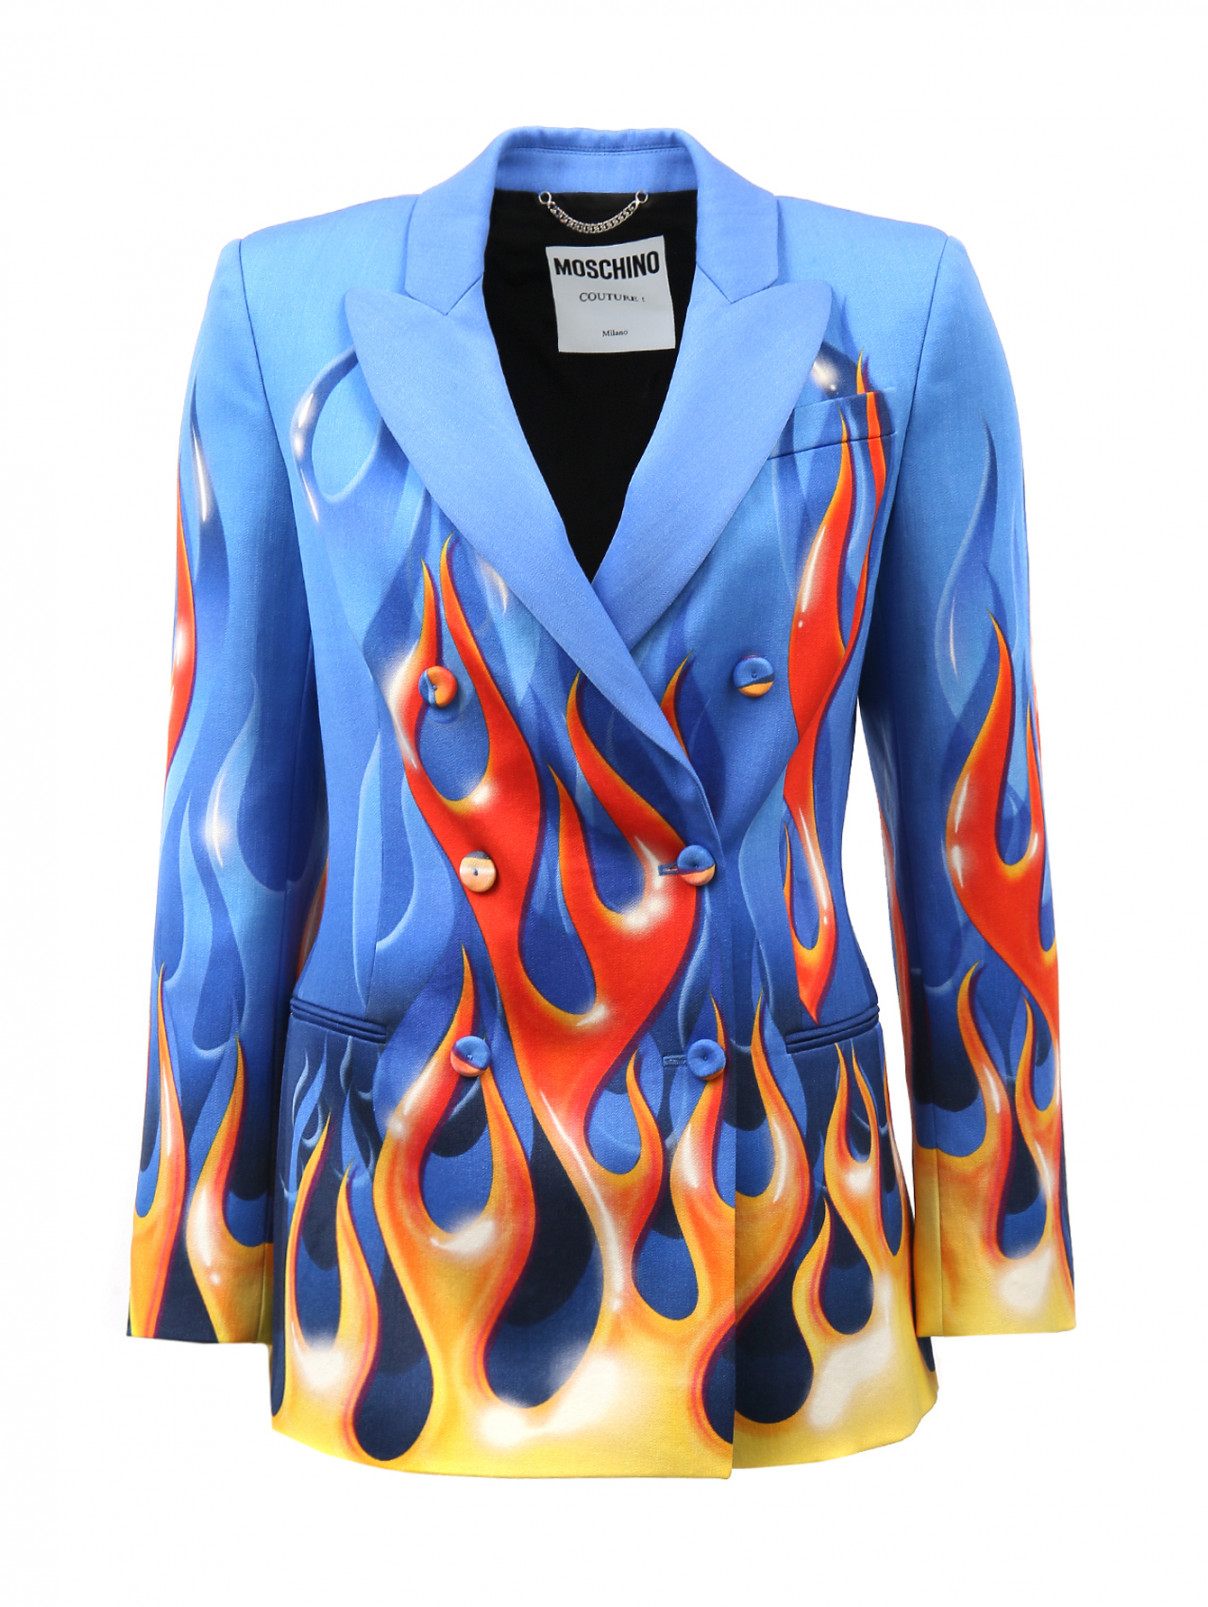 Жакет из шерсти с принтом Moschino Couture  –  Общий вид  – Цвет:  Синий